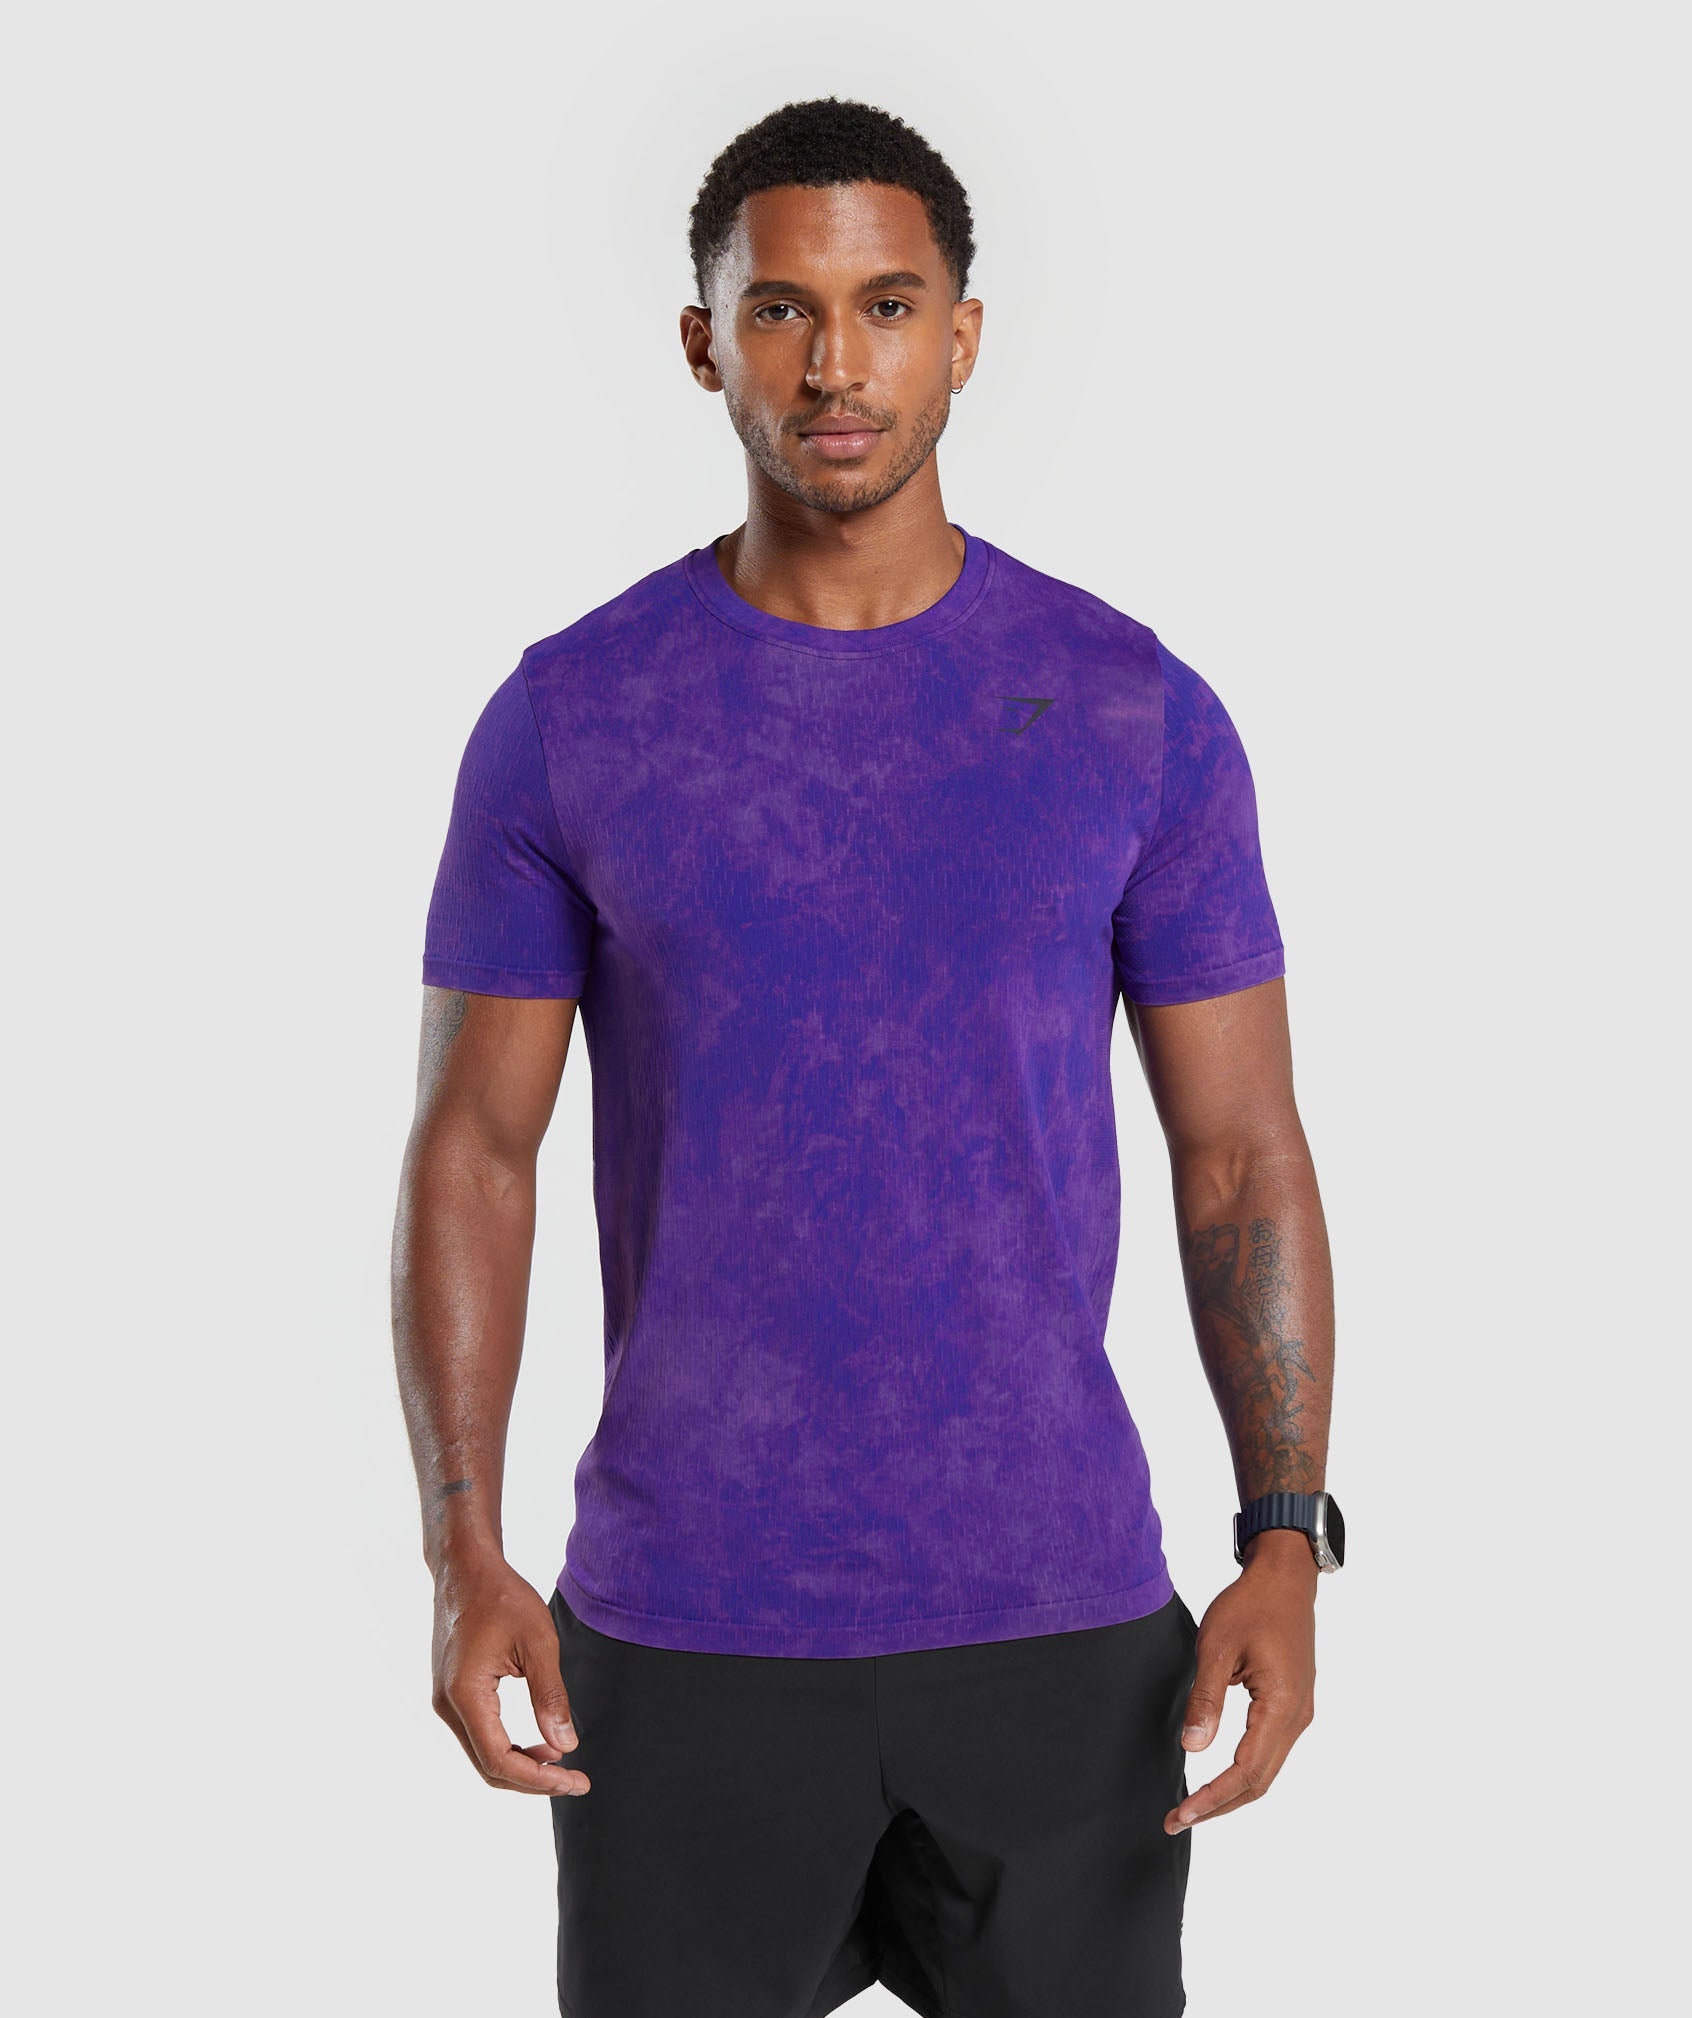 Gymshark Sport Seamless T-Shirt - Fossil Brown/Black